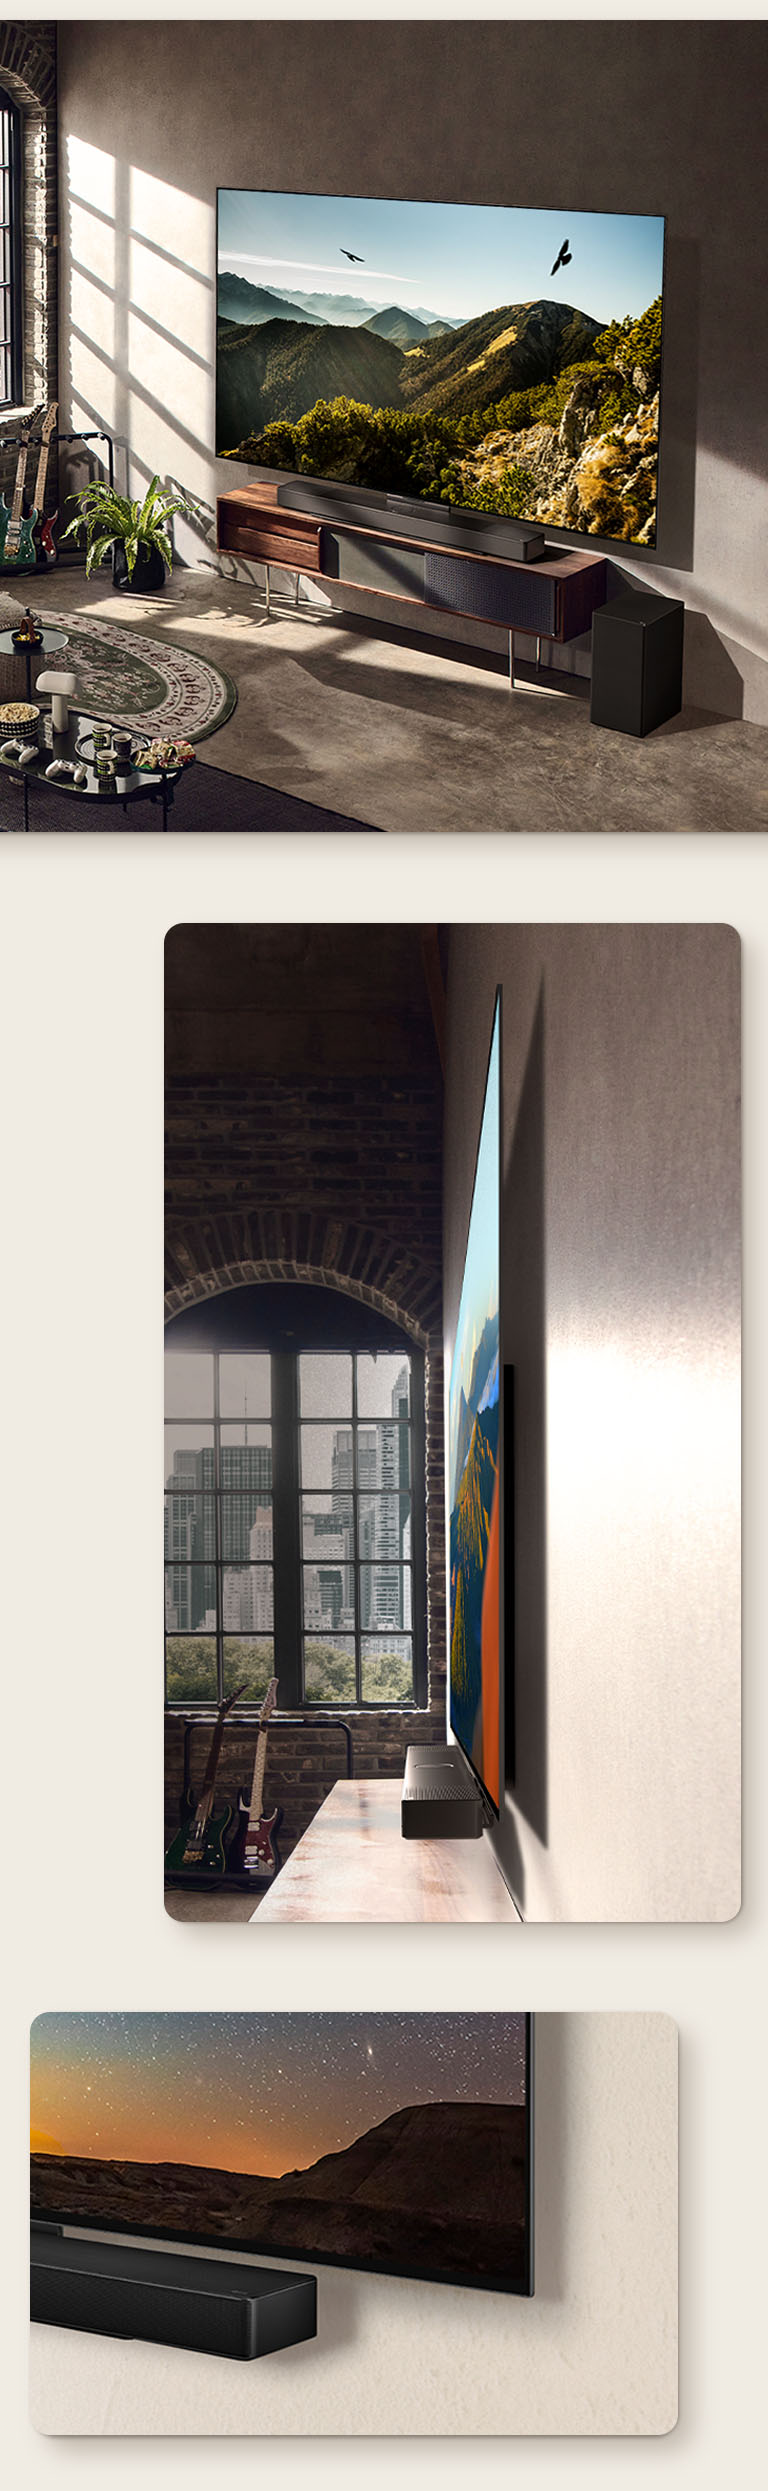 影像顯示，充滿藝術感的房間牆上掛著搭配 Soundbar 的 LG OLED C3。LG OLED C3 超薄機身的側視圖，在窗前俯瞰城市景觀。LG OLED C3 和 Soundbar 的底角。